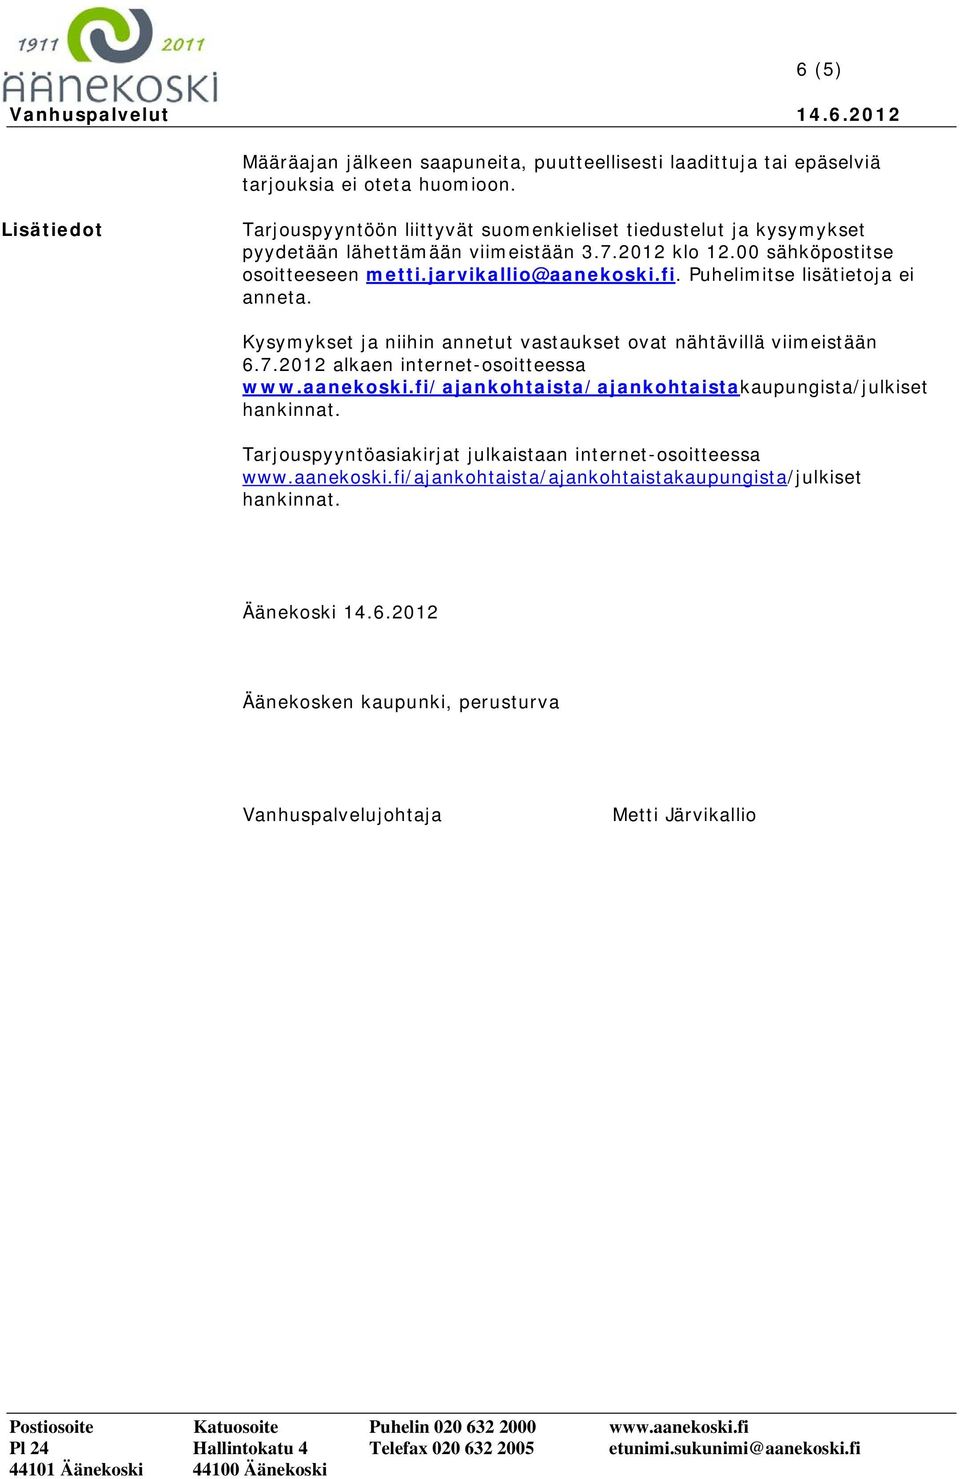 jarvikallio@aanekoski.fi. Puhelimitse lisätietoja ei anneta. Kysymykset ja niihin annetut vastaukset ovat nähtävillä viimeistään 6.7.2012 alkaen internet-osoitteessa www.aanekoski.fi/ajankohtaista/ajankohtaistakaupungista/julkiset hankinnat.